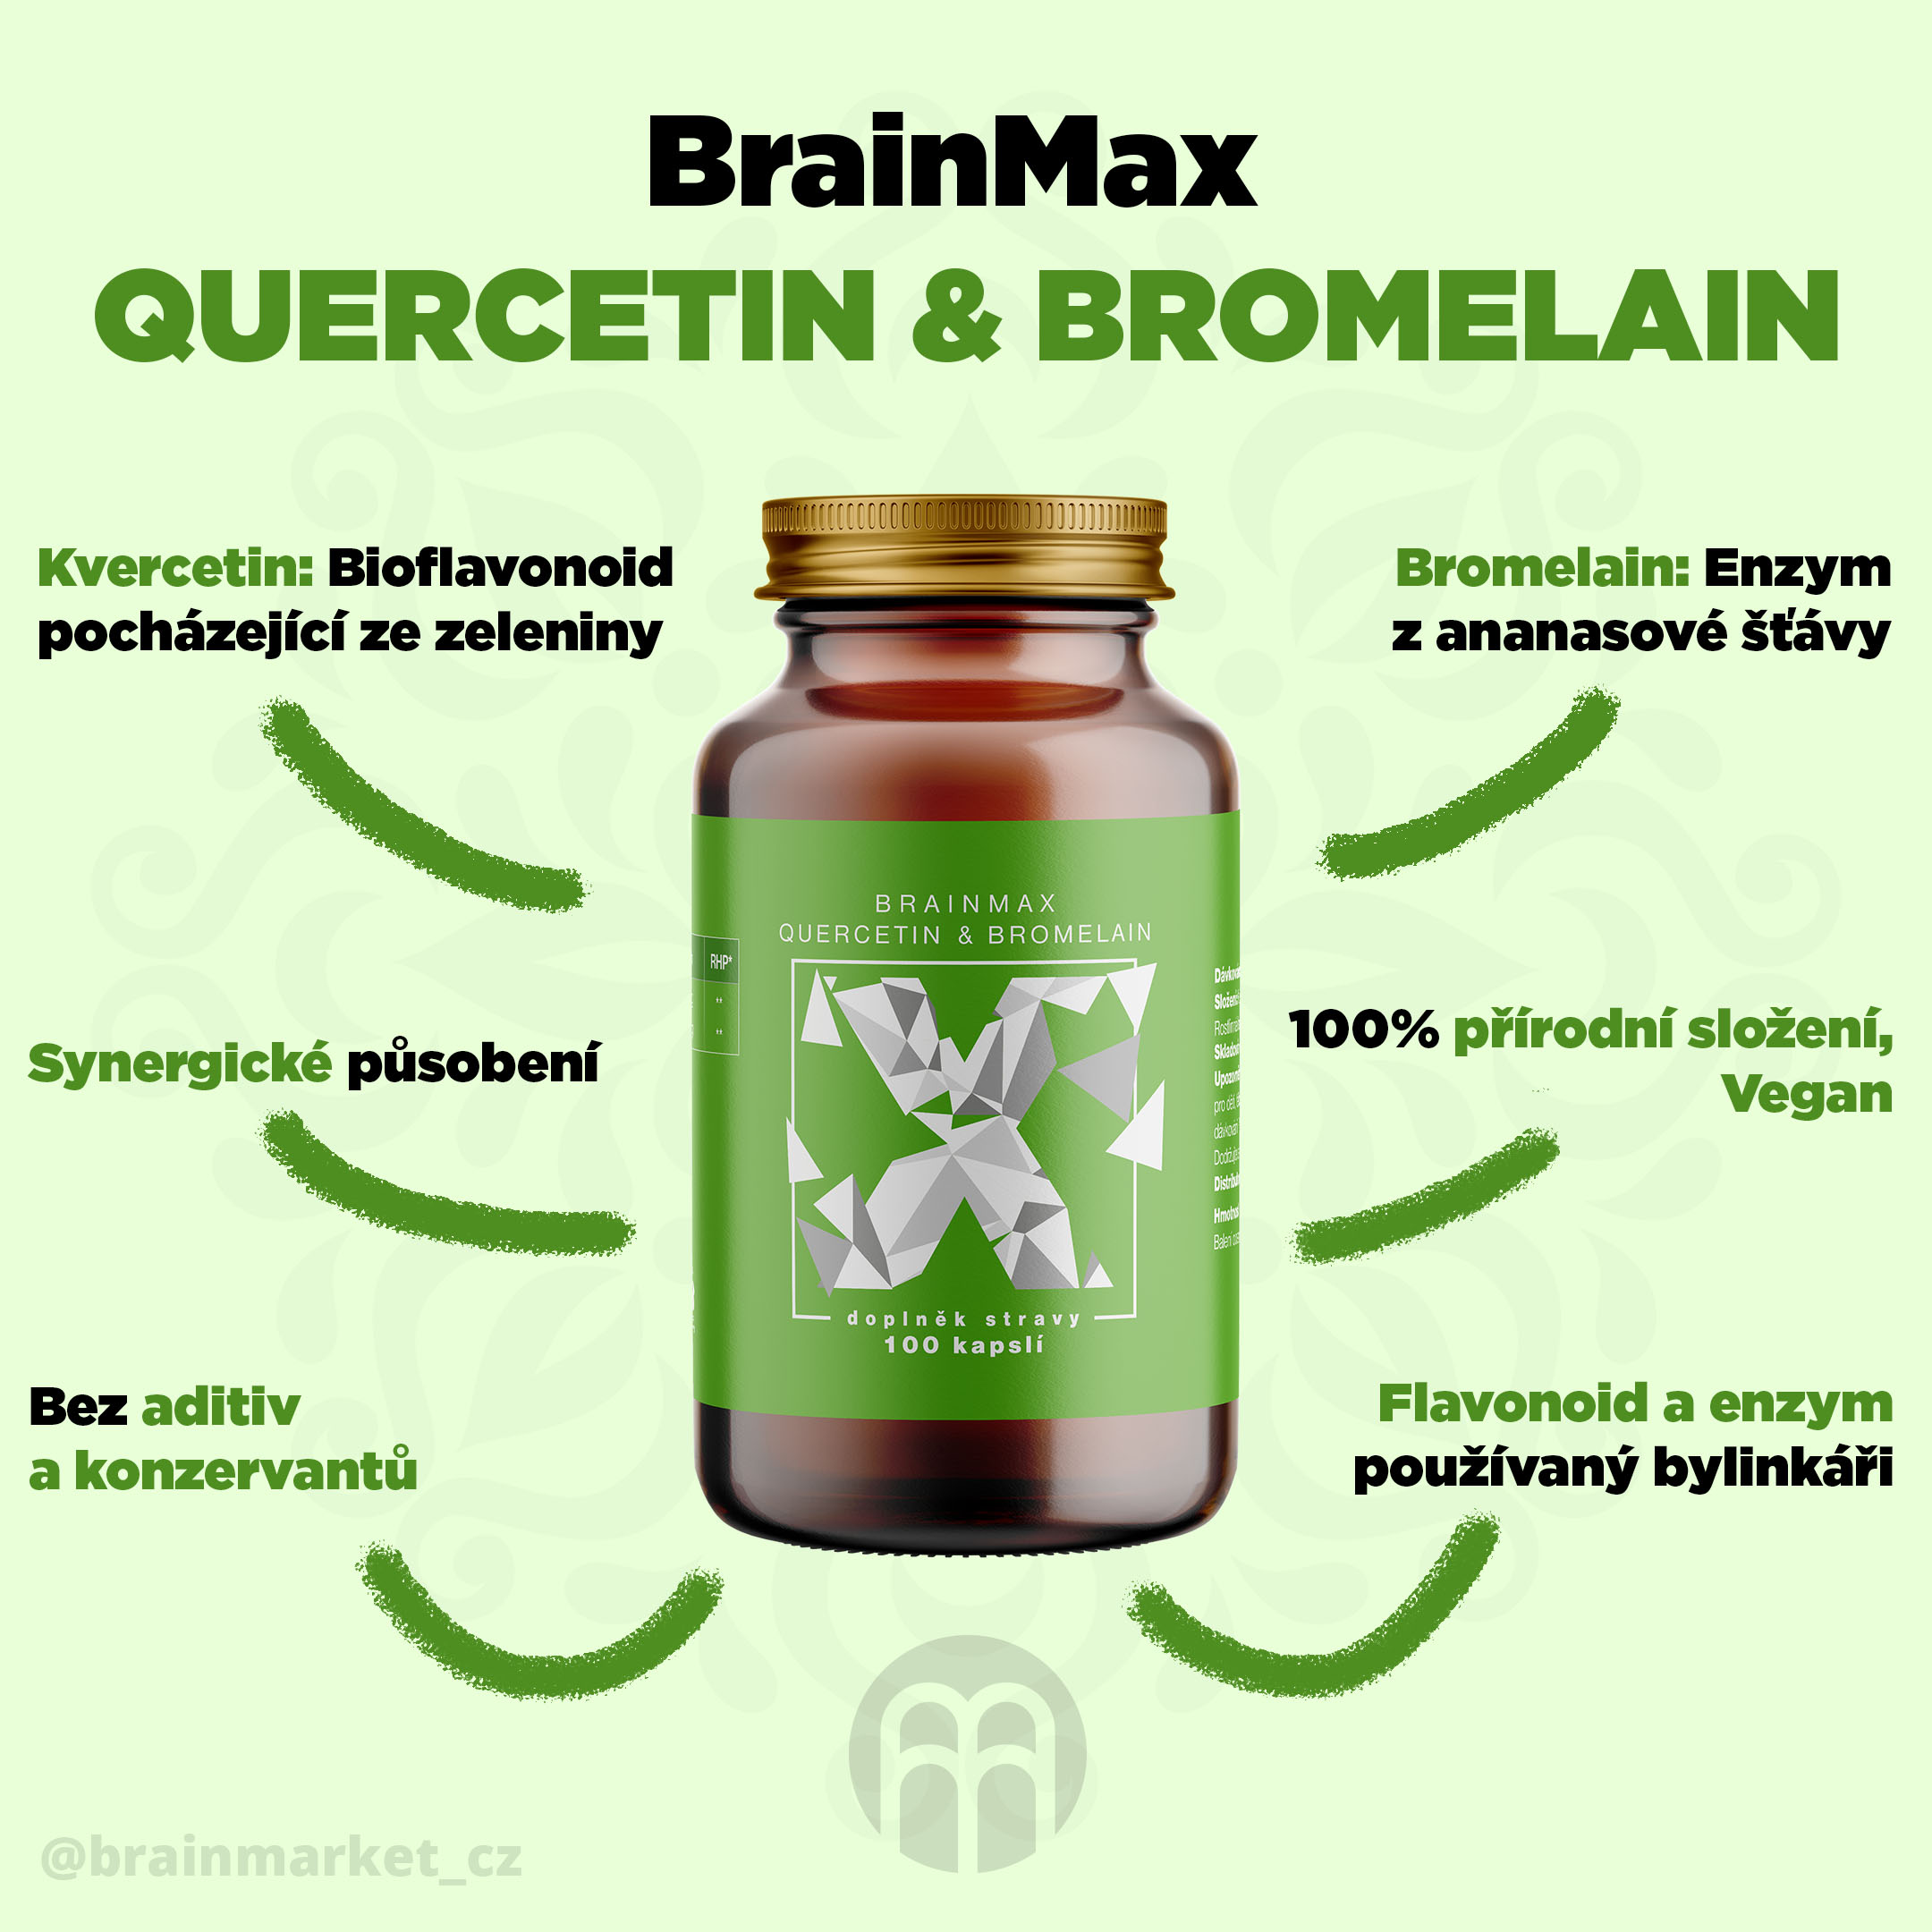 BrainMax Quercetin & Bromelain